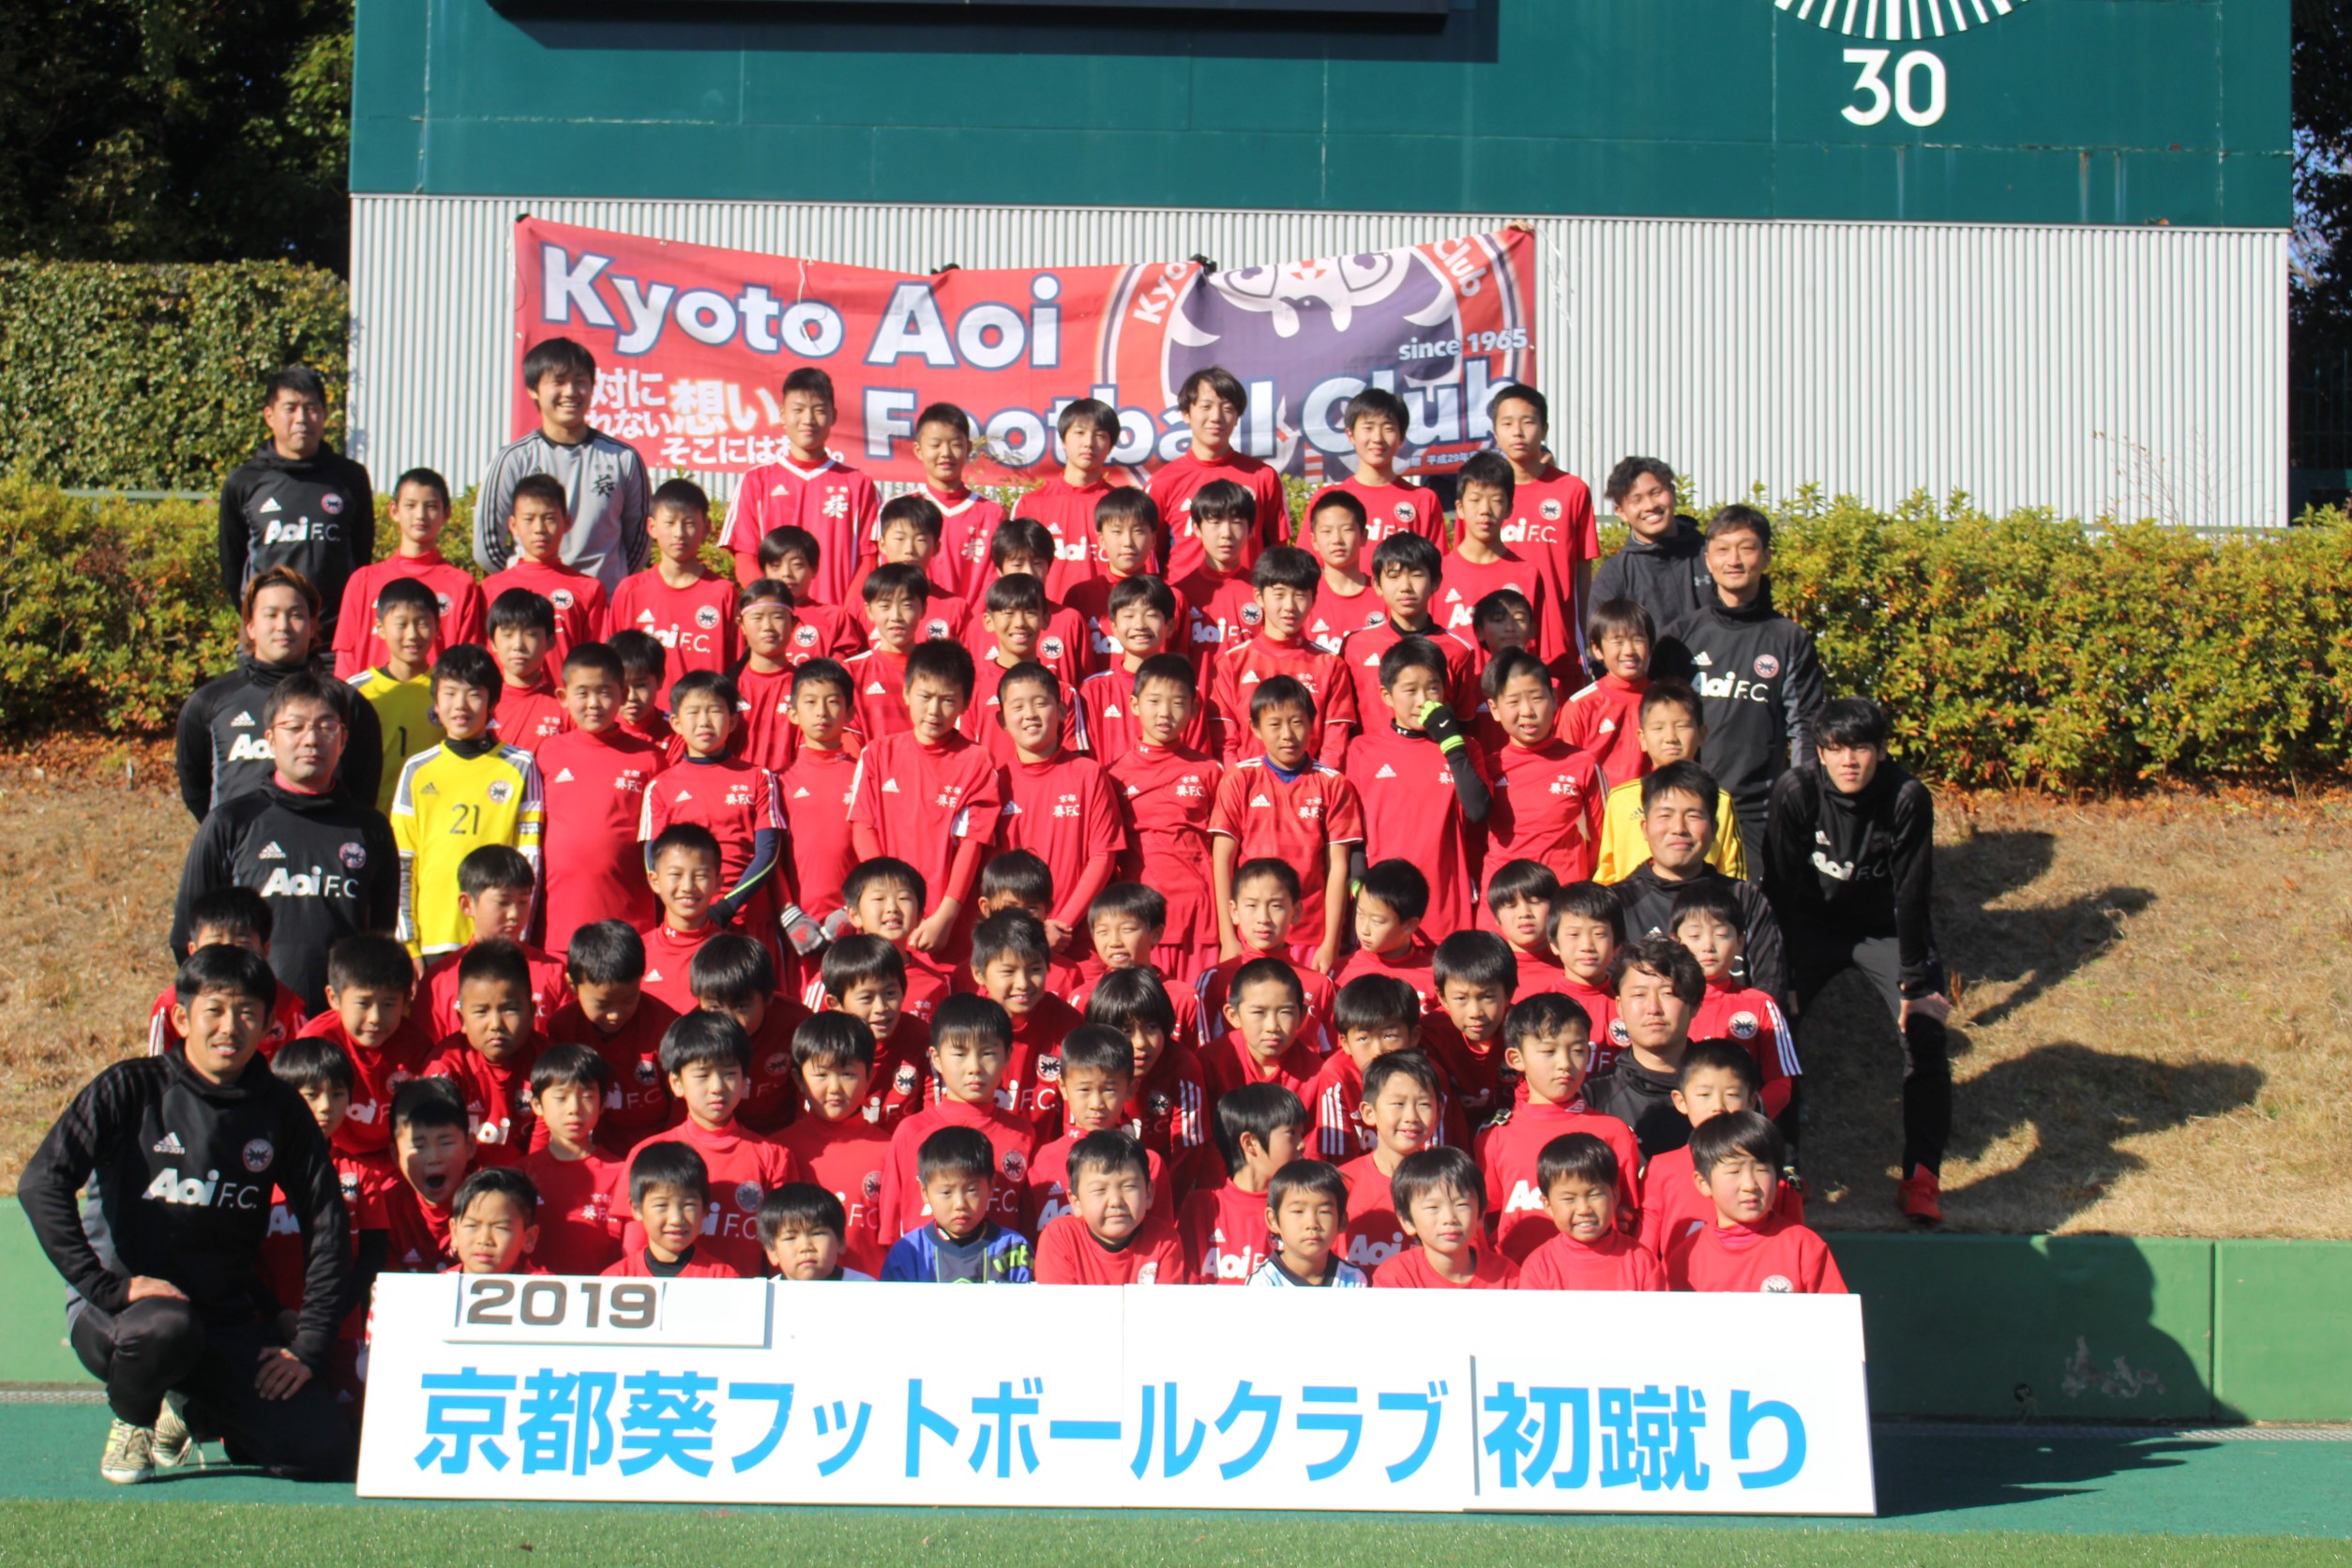 19初蹴り 京都葵フットボールクラブ 幼児 小学生 中学生対象のサッカークラブ